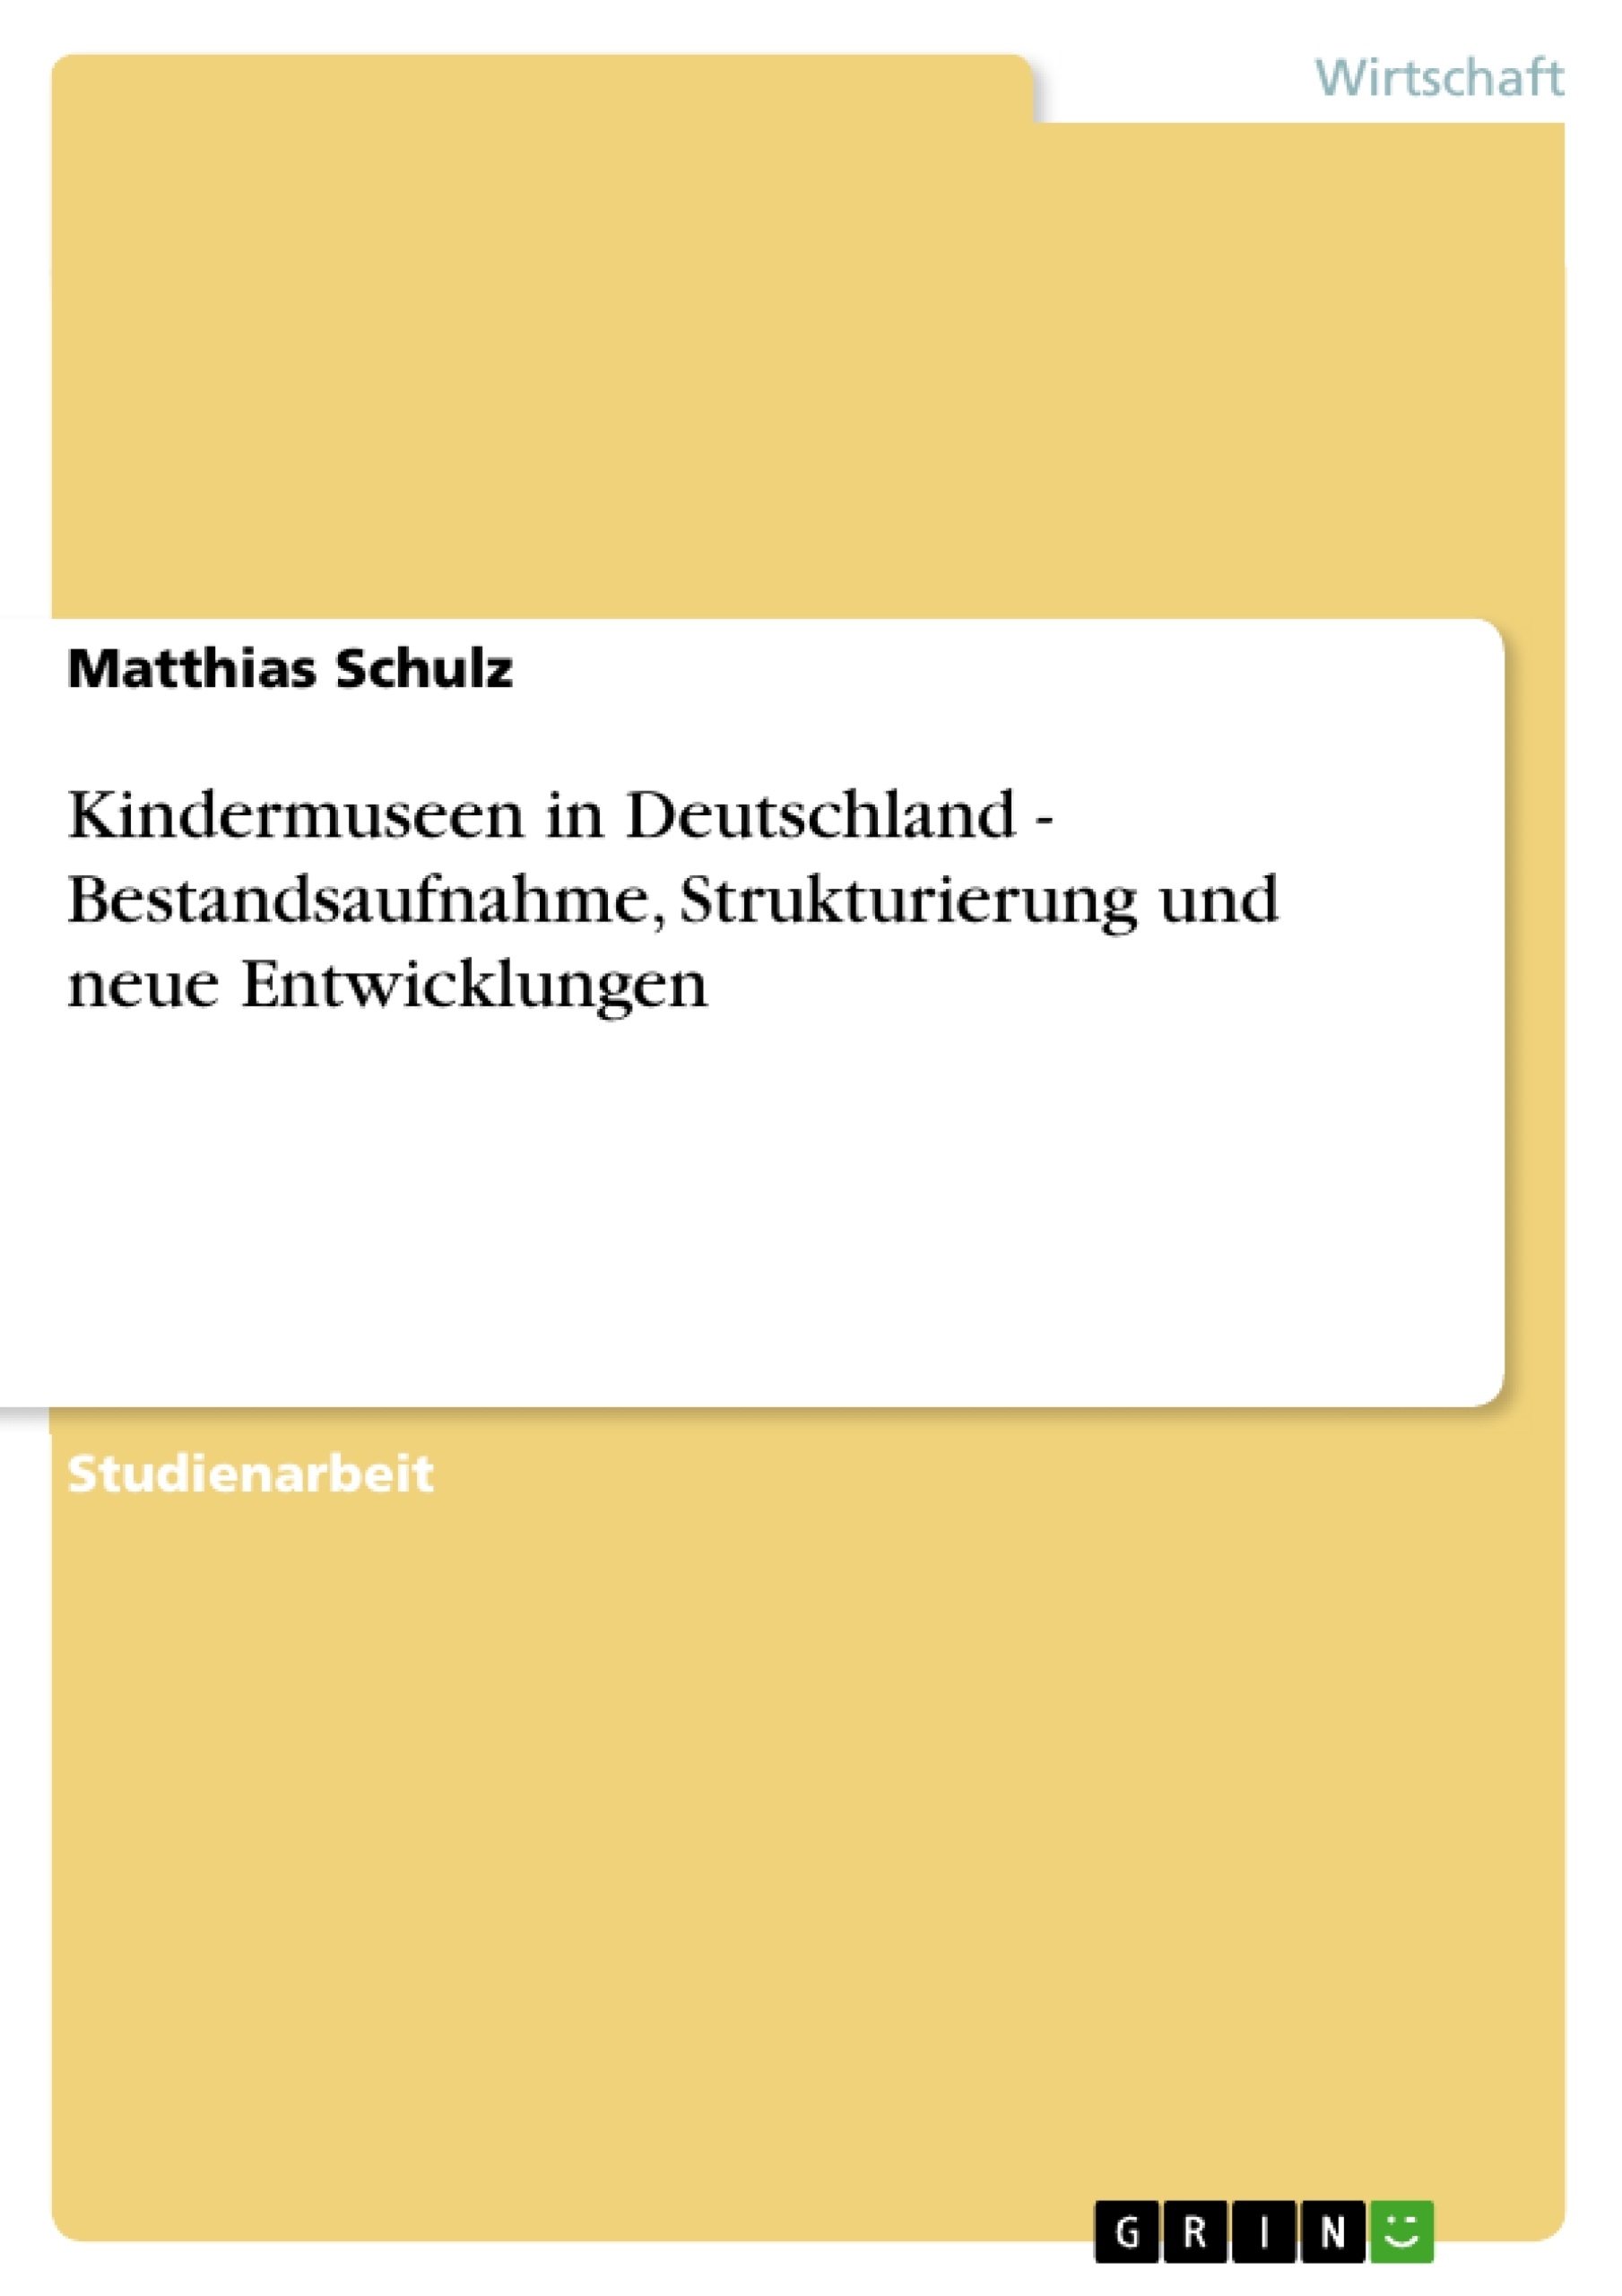 Título: Kindermuseen in Deutschland - Bestandsaufnahme, Strukturierung und neue Entwicklungen